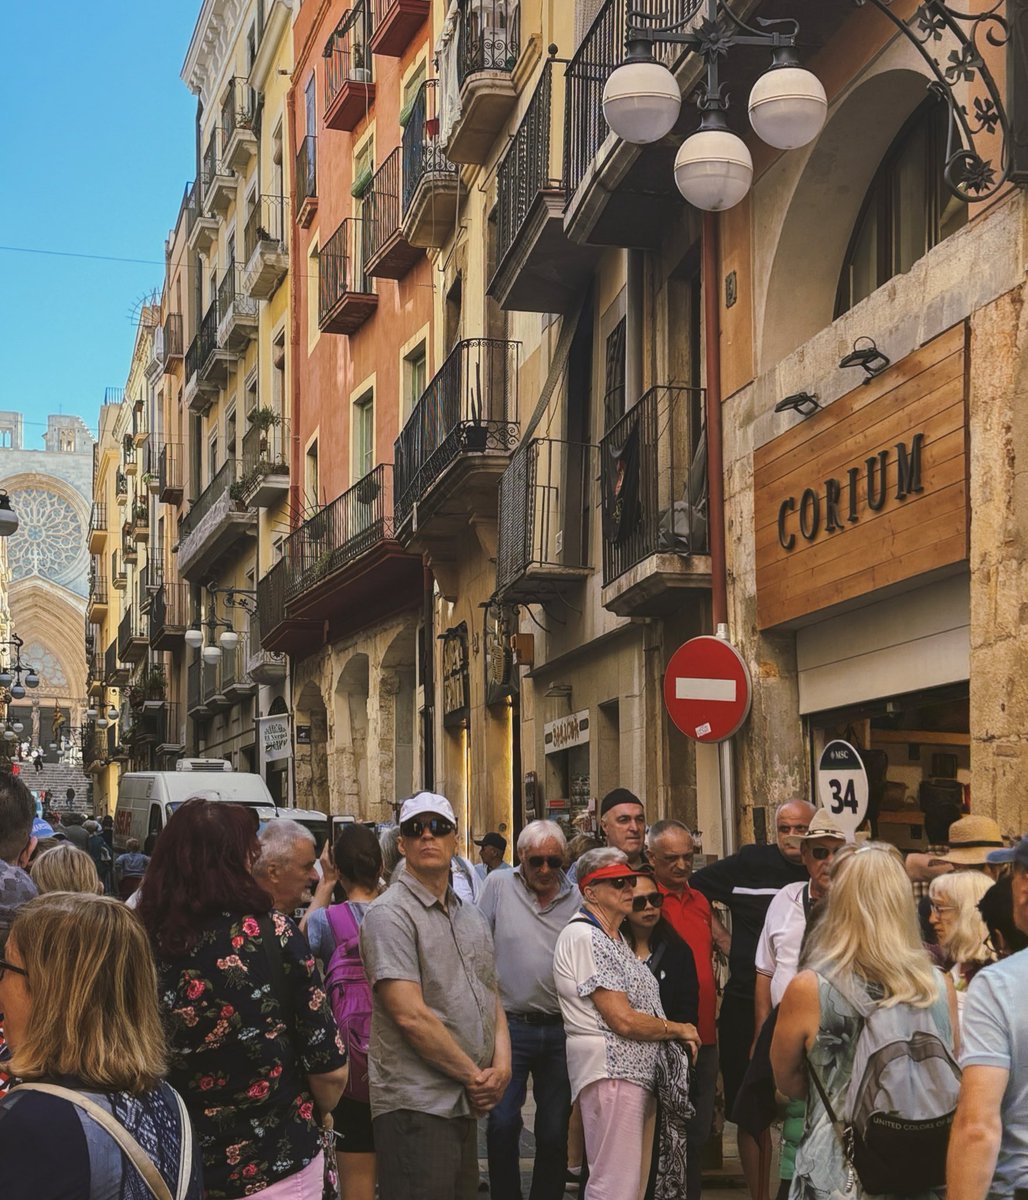 Tristíssima per veure com #Tarragona es converteix en una ciutat protagonitzada per creueristes i botigues absurdes.
Poder caminar pel meu barri sense haver d’esquivar grups gegants de turistes és una missió cada vegada més difícil. 

Atureu-ho, @TGNAjuntament